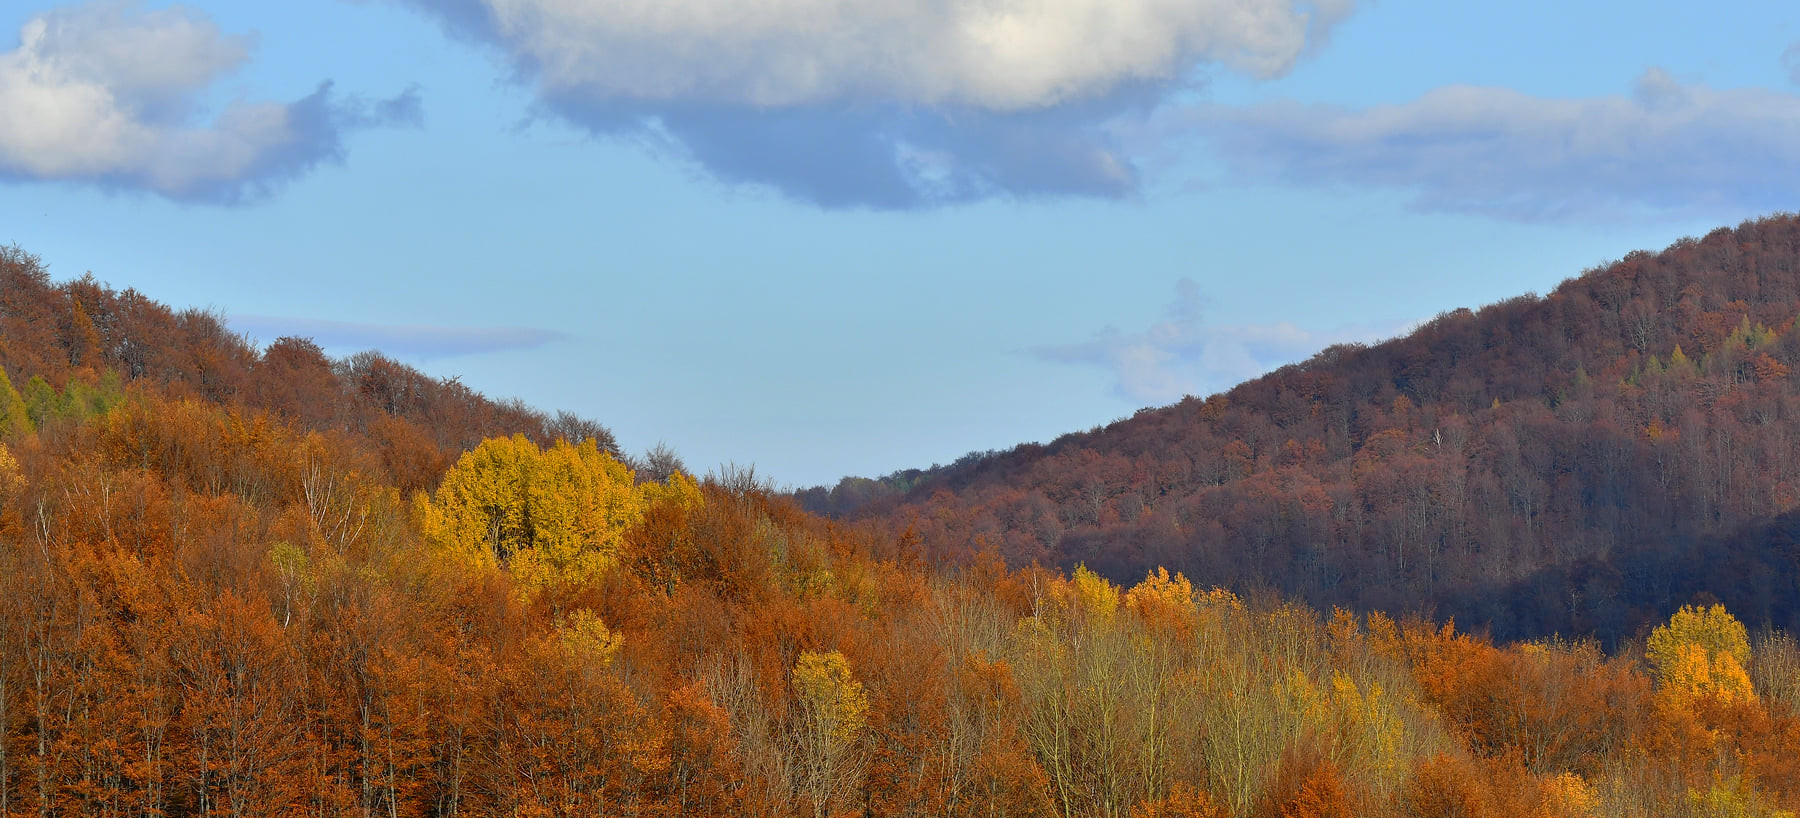 Bieszczadzka złota jesień schodzi w doliny (FOTO)